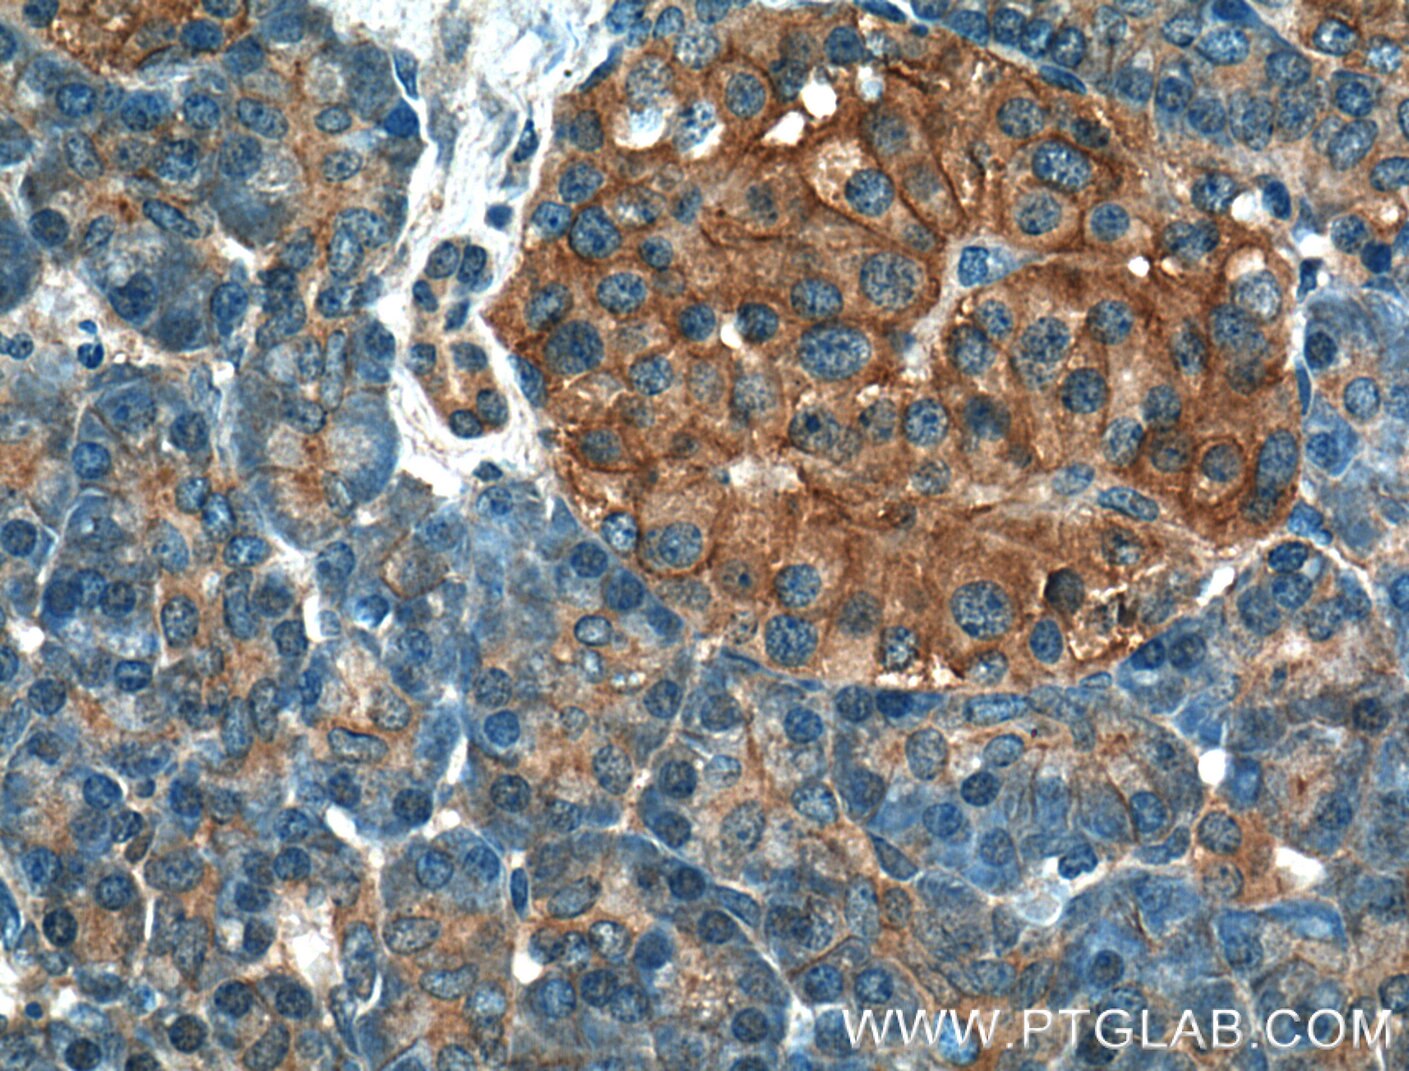 Immunohistochemistry (IHC) staining of human pancreas tissue using GNAS Monoclonal antibody (66253-1-Ig)